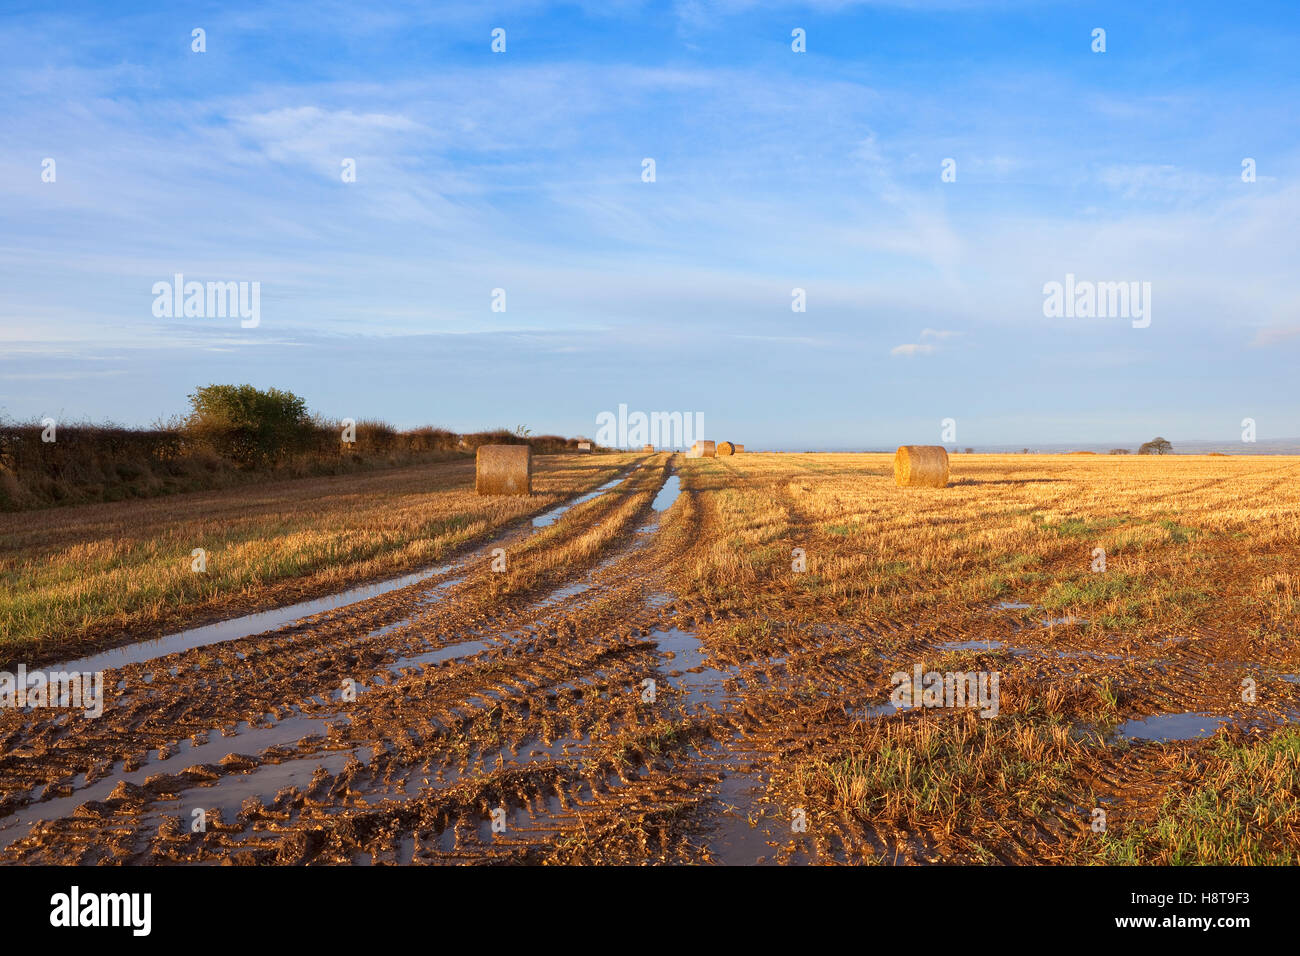 Un champ de chaumes boueux avec empreinte de tracteur et rond bottes de paille dans un paysage d'automne sur les Yorkshire Wolds. Banque D'Images